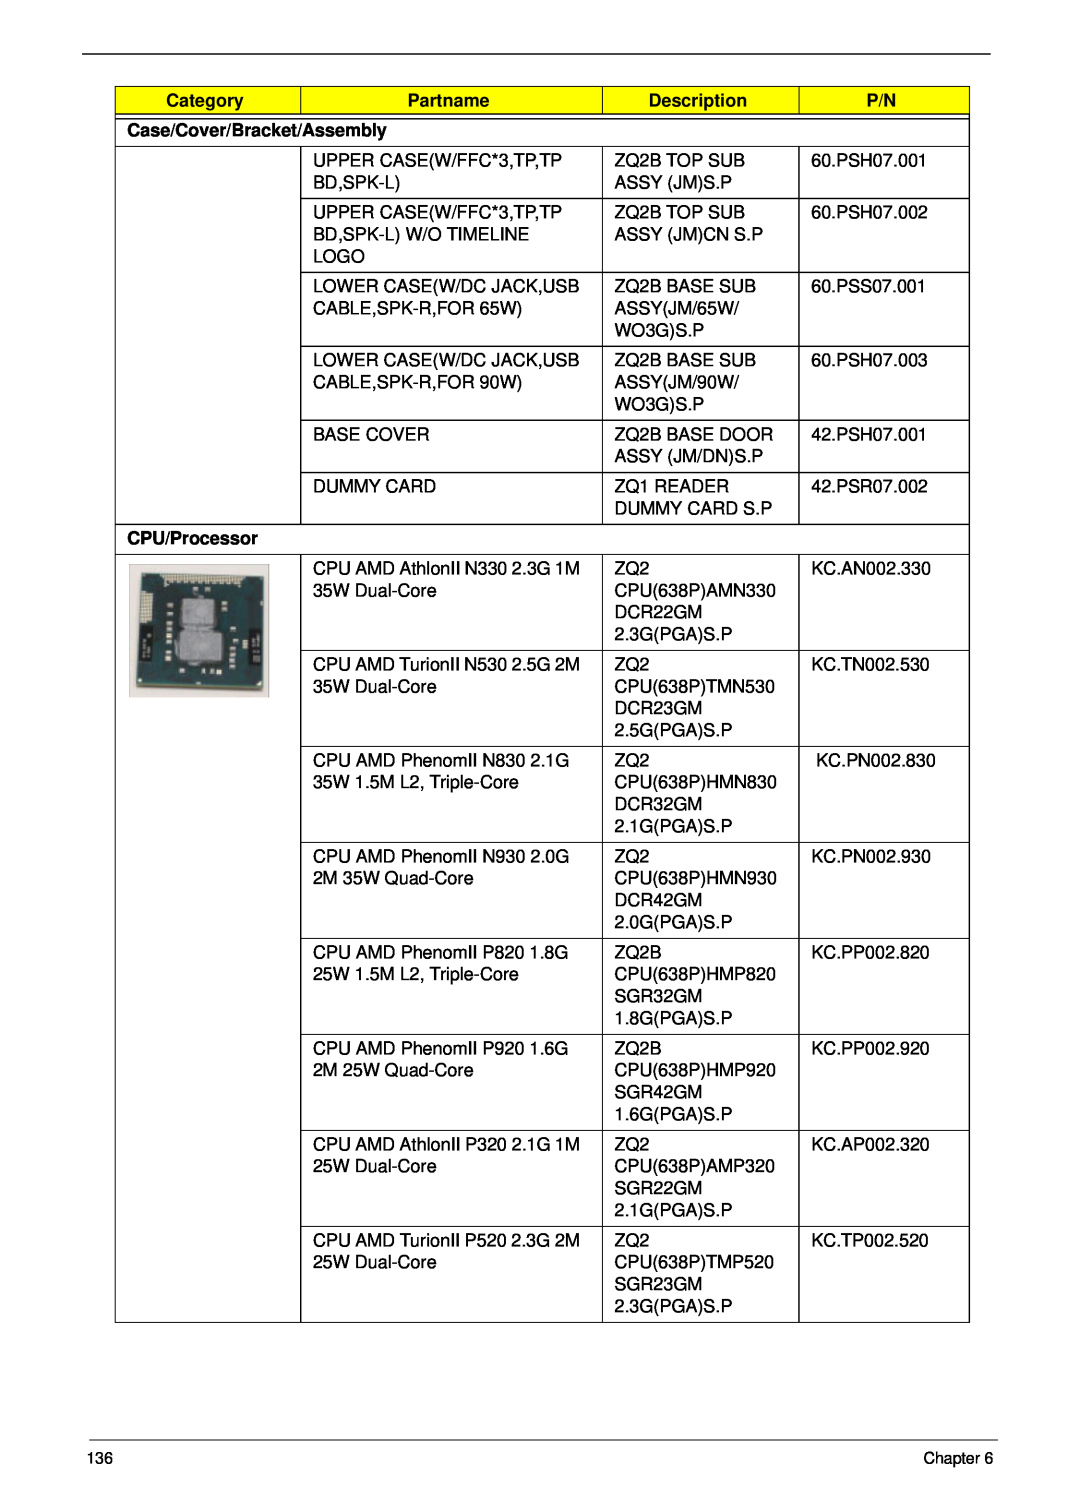 Aspire Digital 4625G manual Category, Partname, Description, Case/Cover/Bracket/Assembly, CPU/Processor 